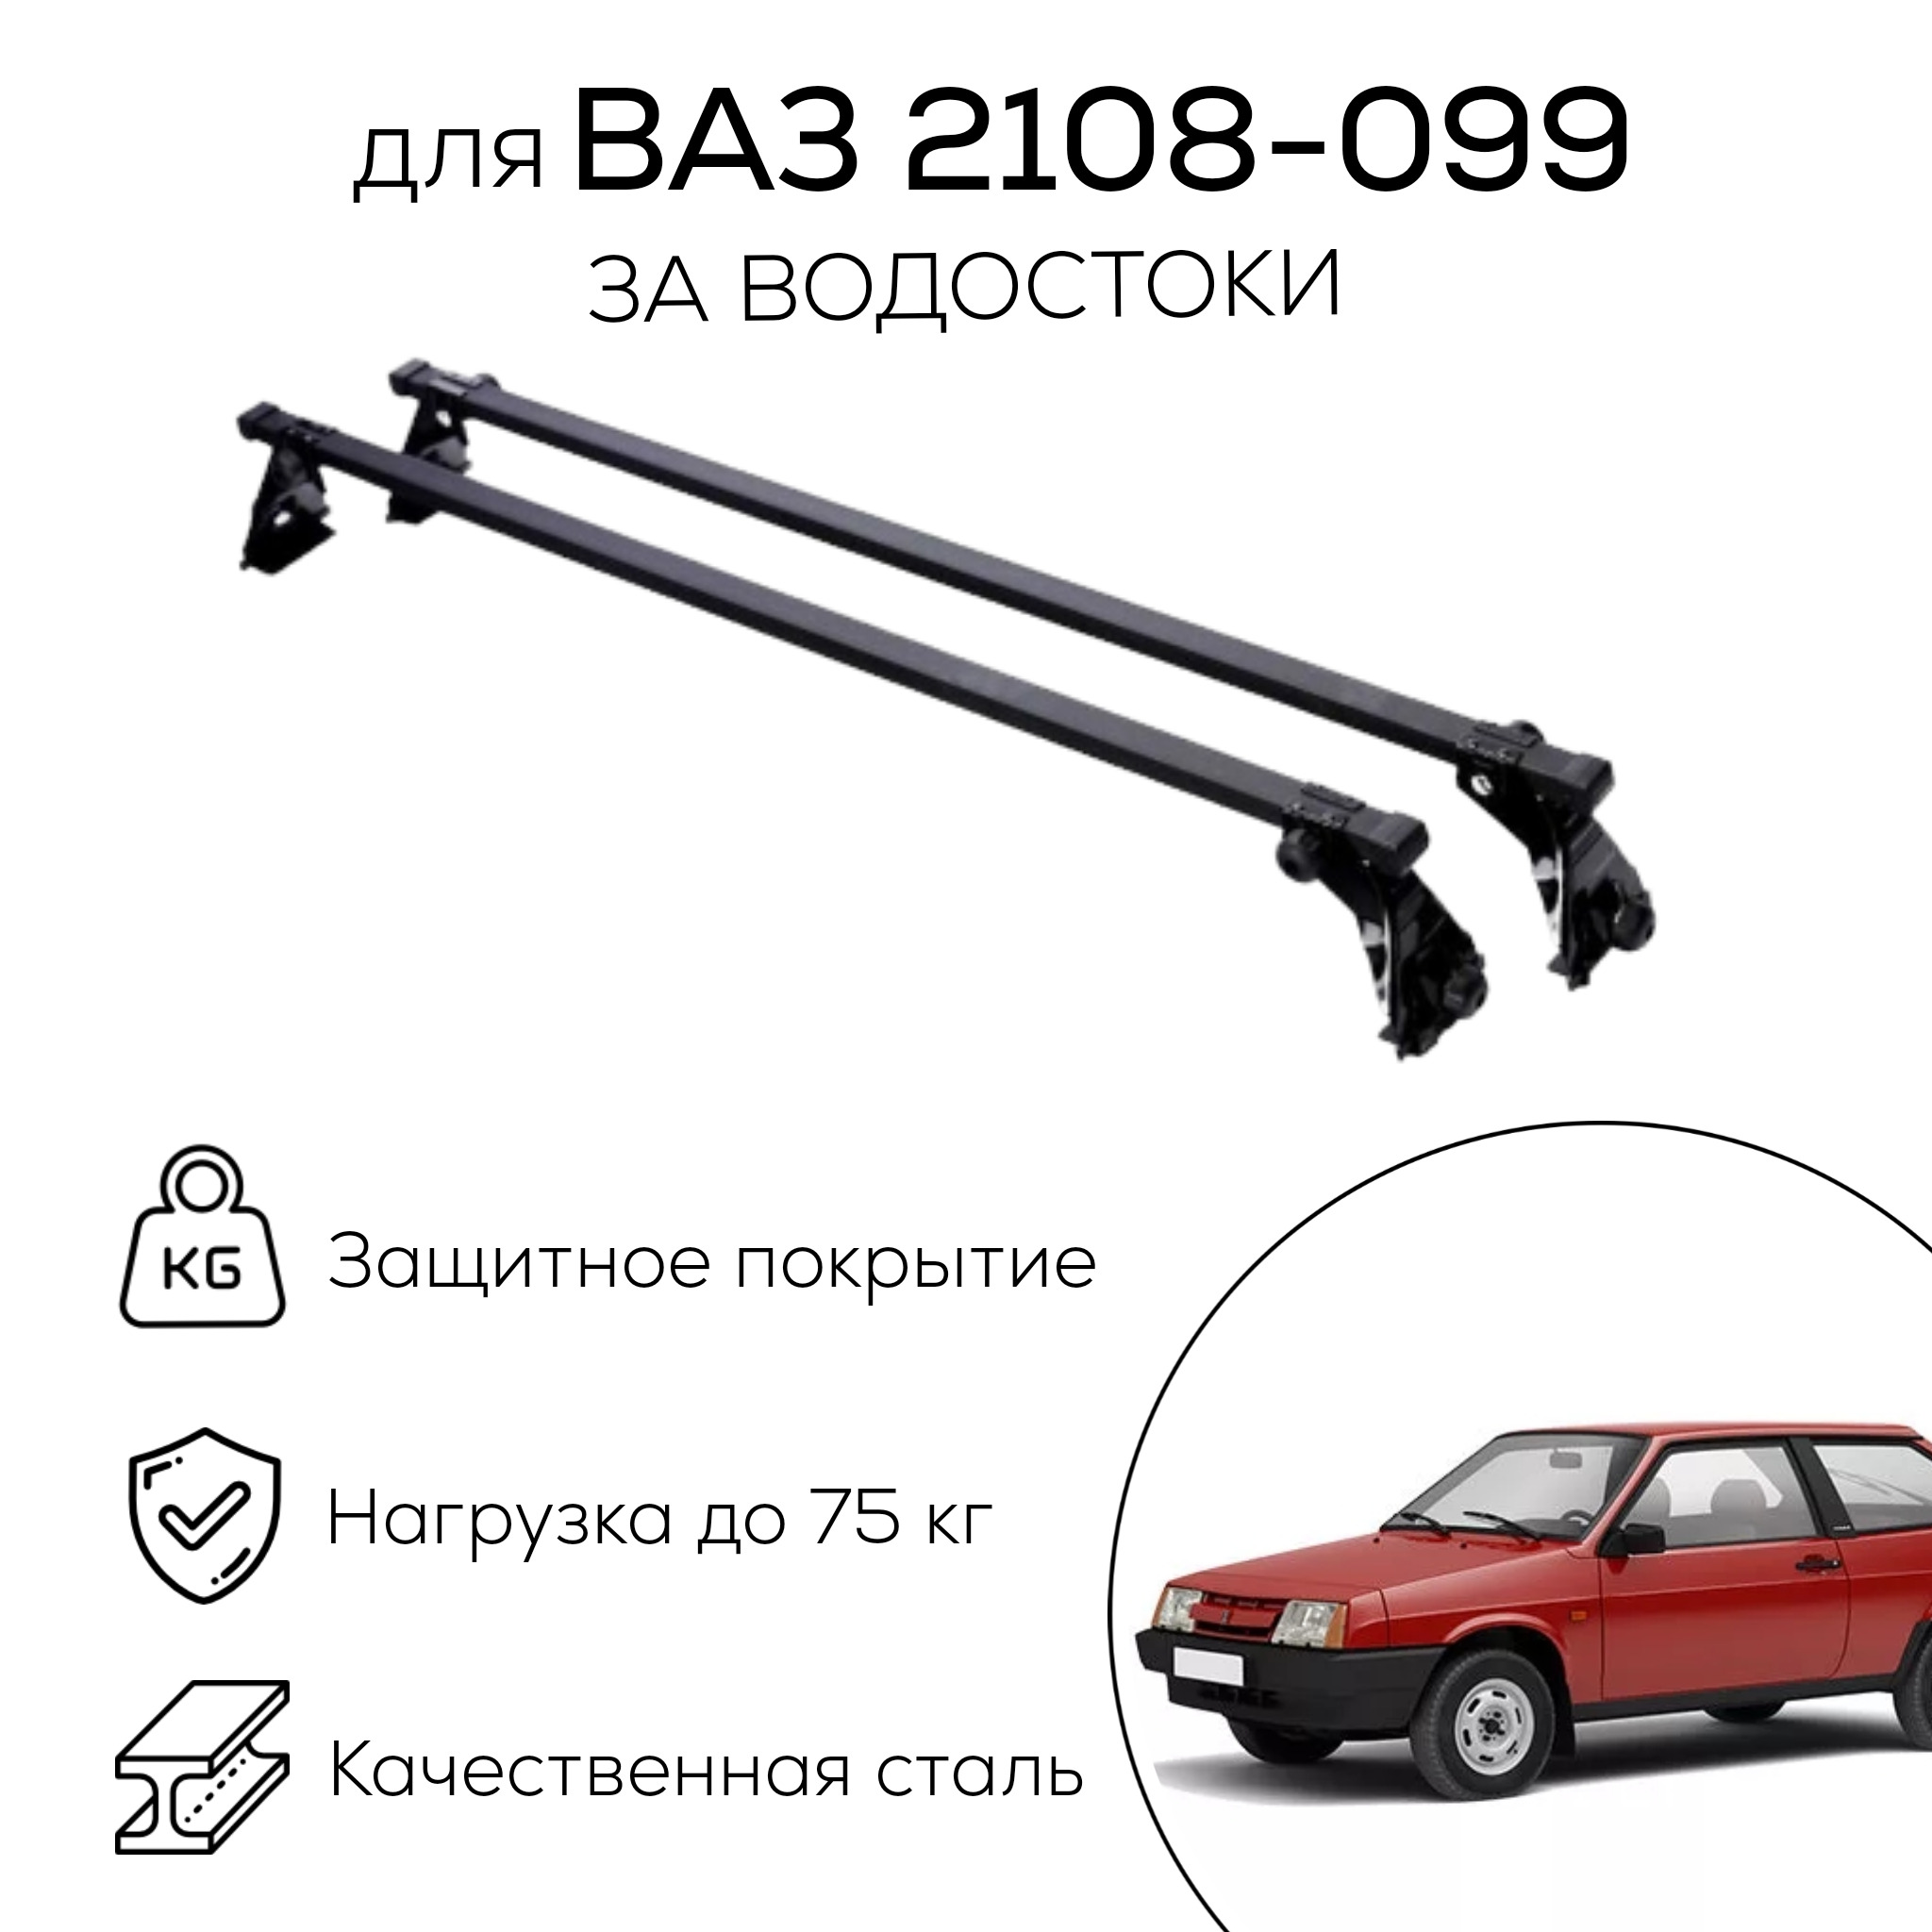 Экспедиционный багажник на УАЗ 469 больше похож на 